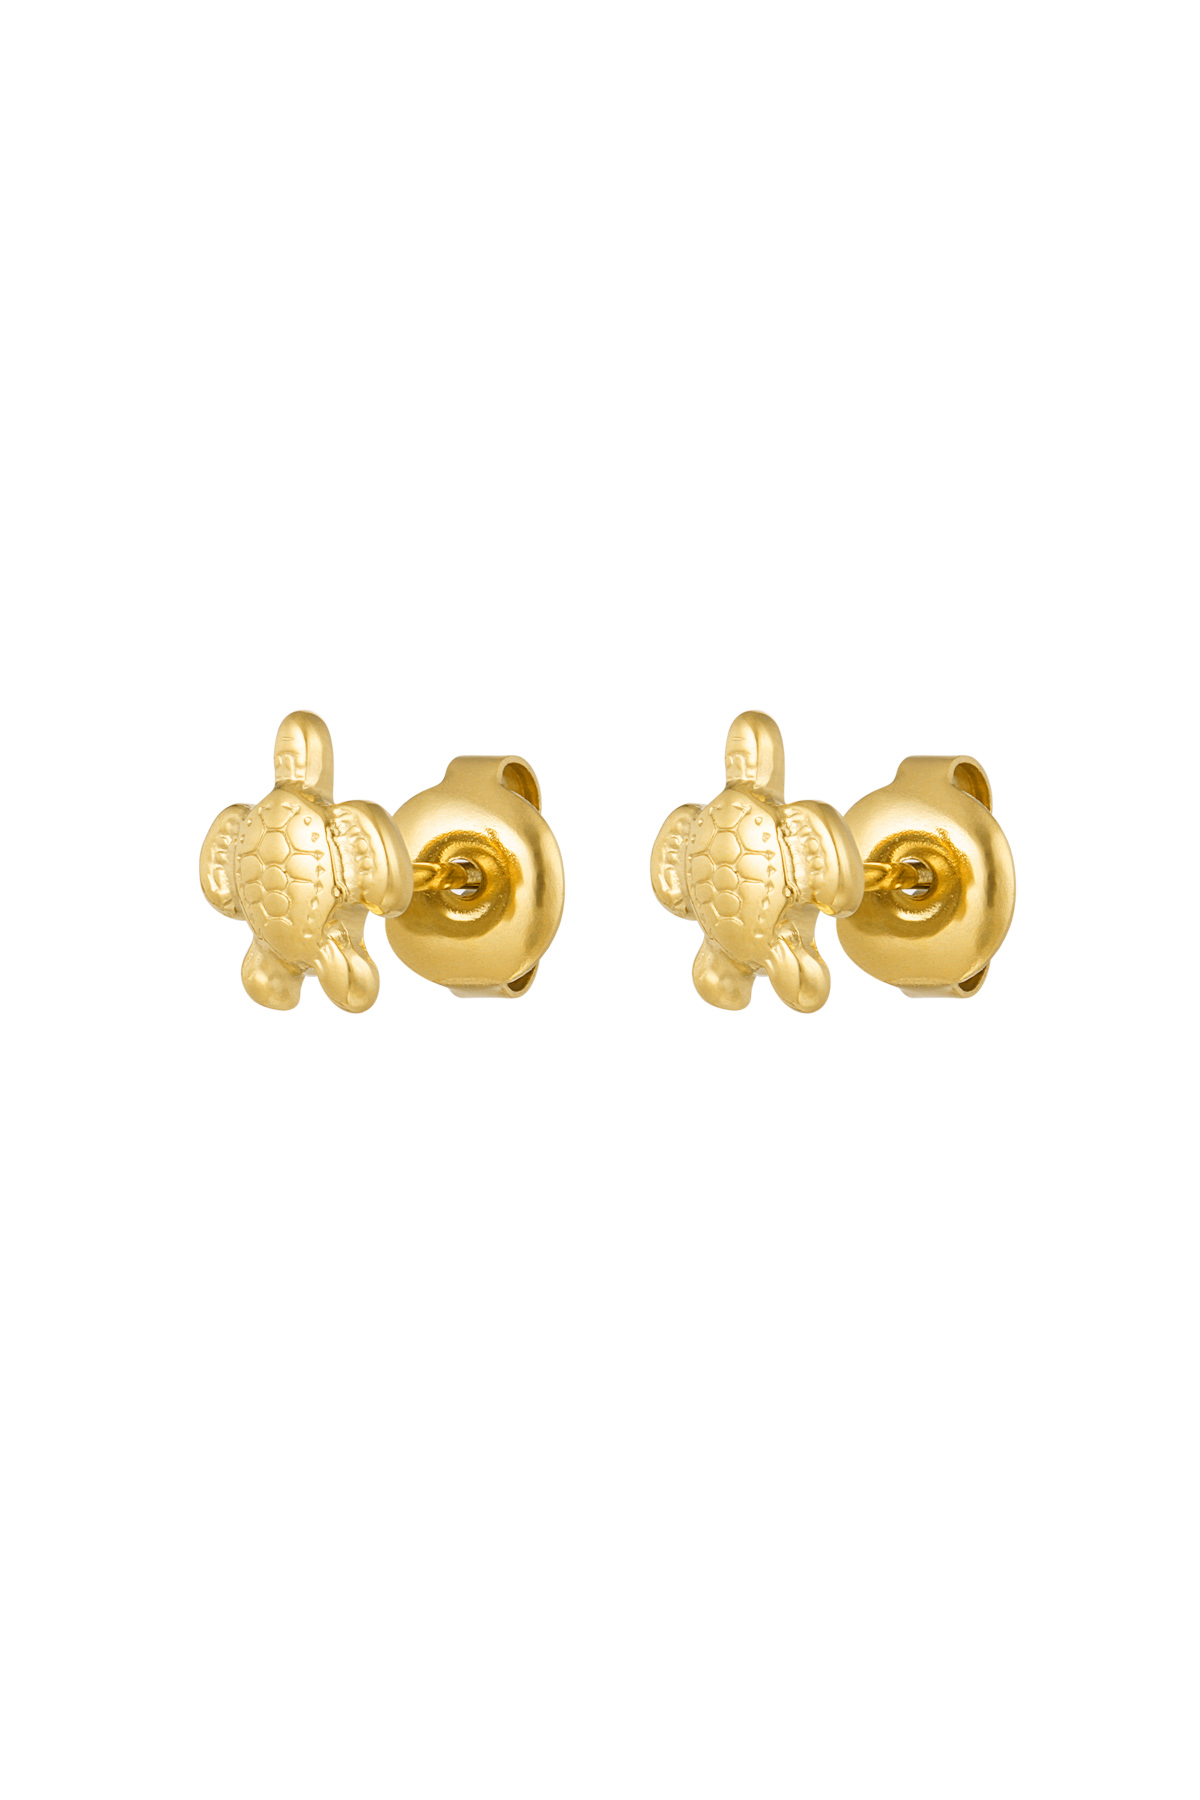 Turtle earrings - gold